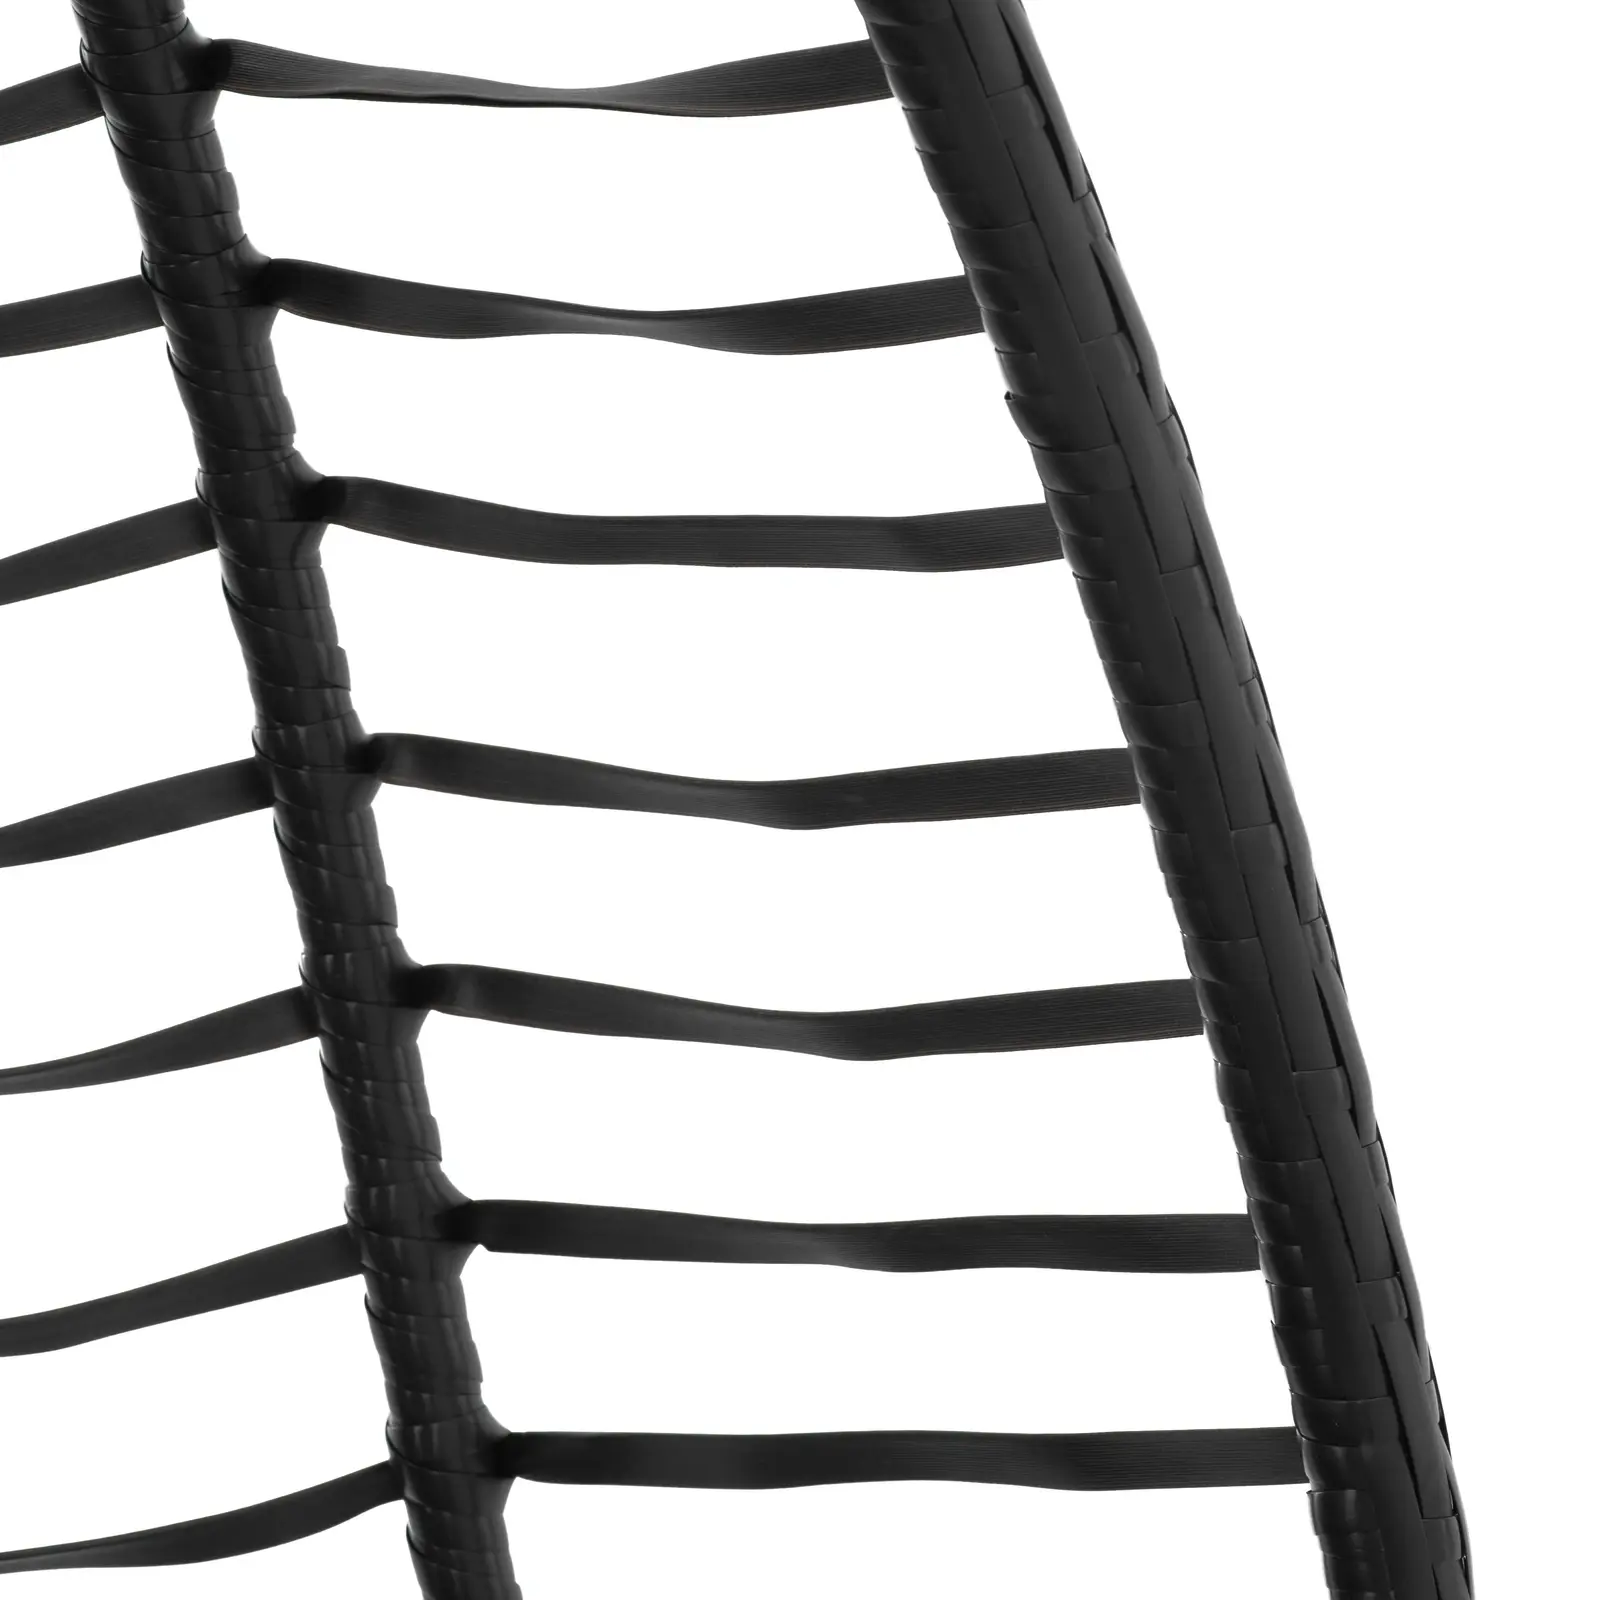 Venkovní závěsné křeslo s rámem - skládací sedák - černá/šedá - oválné